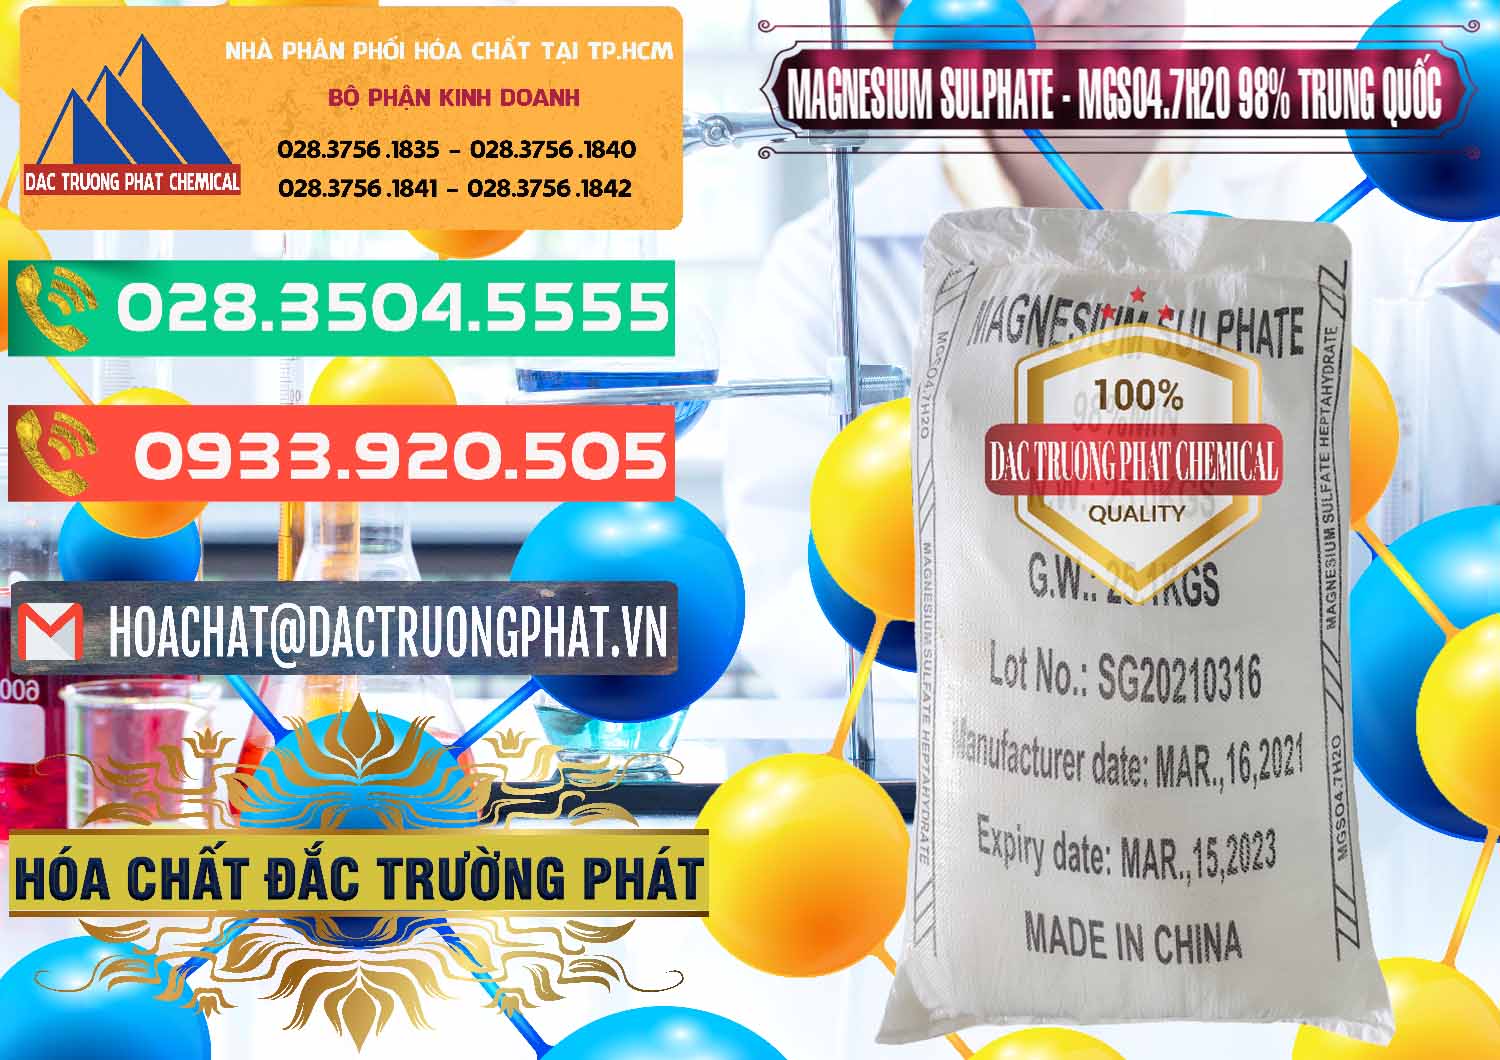 Công ty bán & phân phối MGSO4.7H2O – Magnesium Sulphate 98% Trung Quốc China - 0229 - Nơi chuyên bán _ cung cấp hóa chất tại TP.HCM - congtyhoachat.com.vn